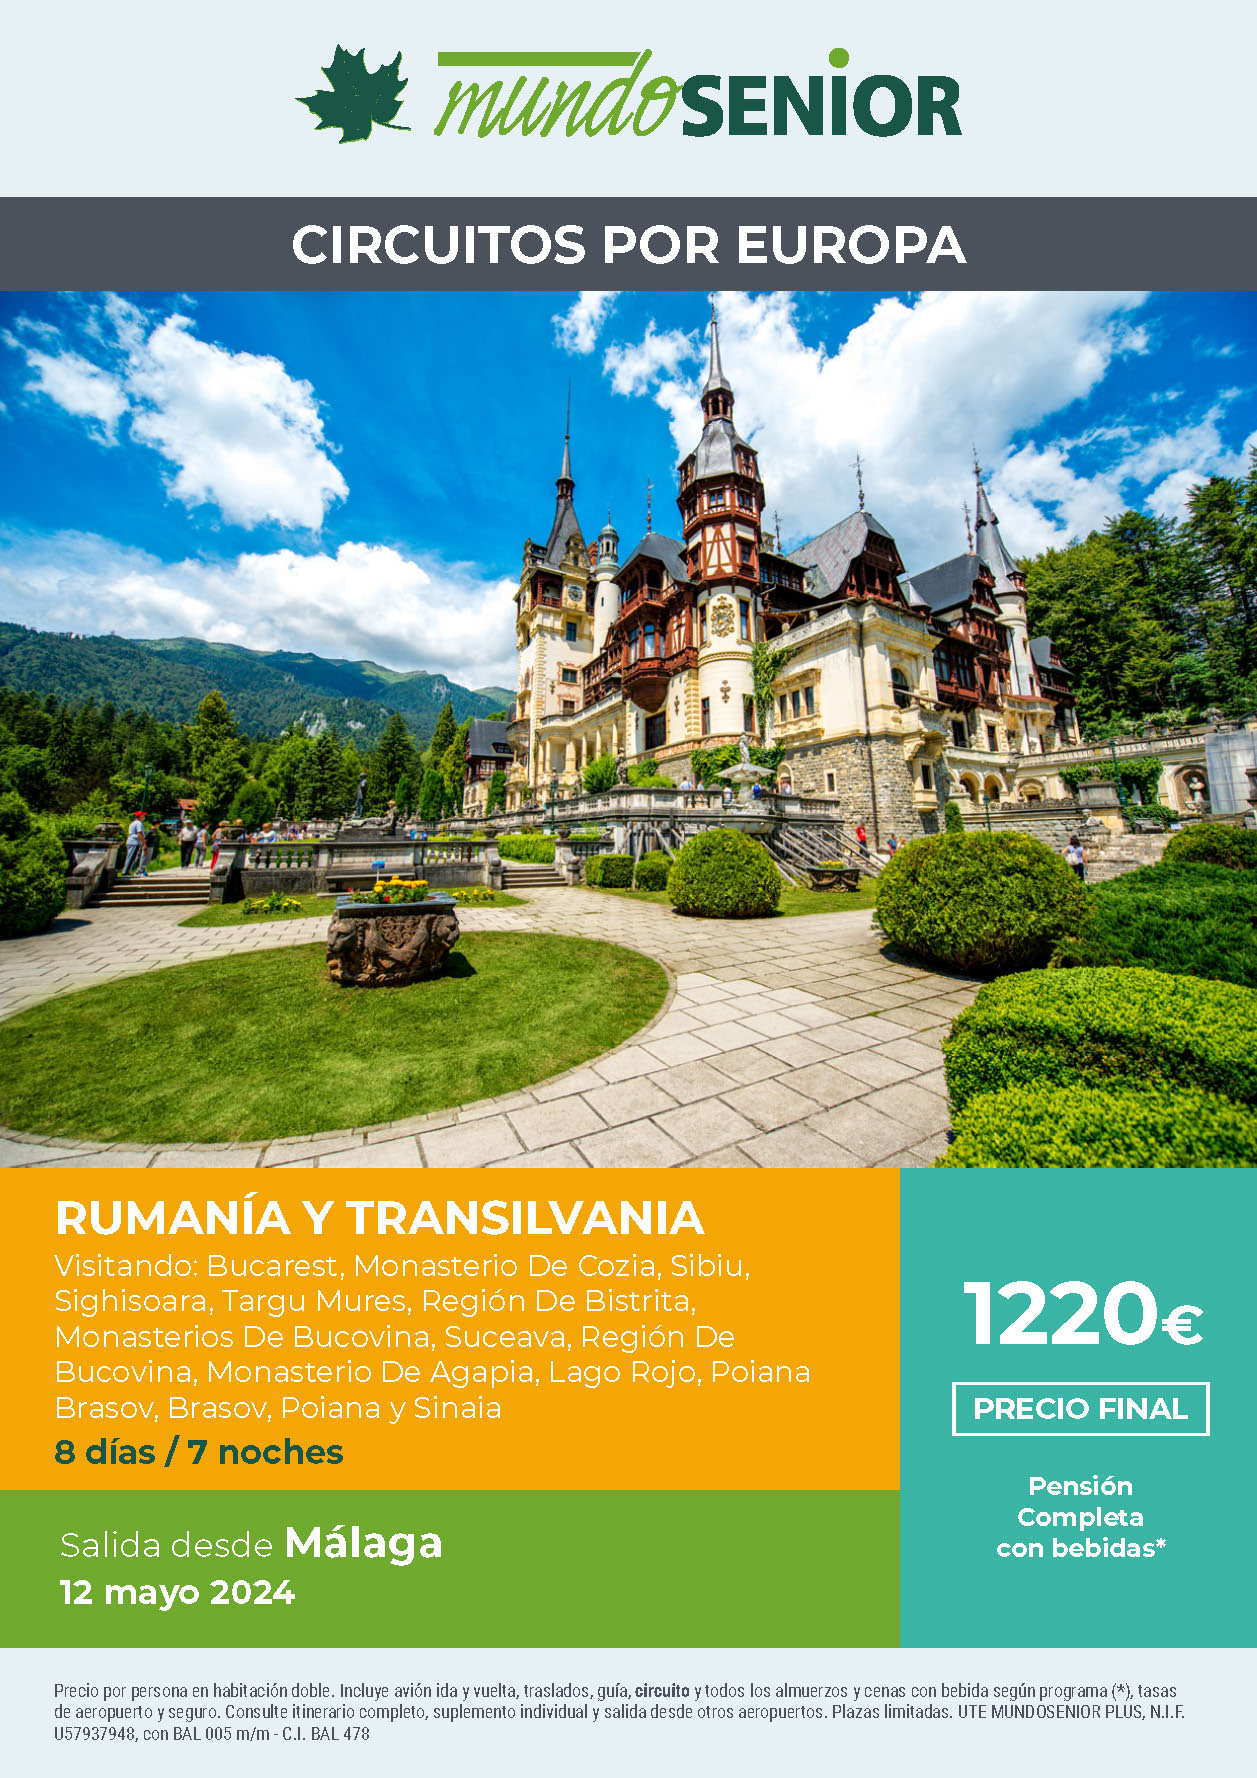 Oferta Mundo Senior circuito Rumania y Transilvania 8 dias Pension Completa salida 12 mayo 2024 en vuelo directo desde Malaga